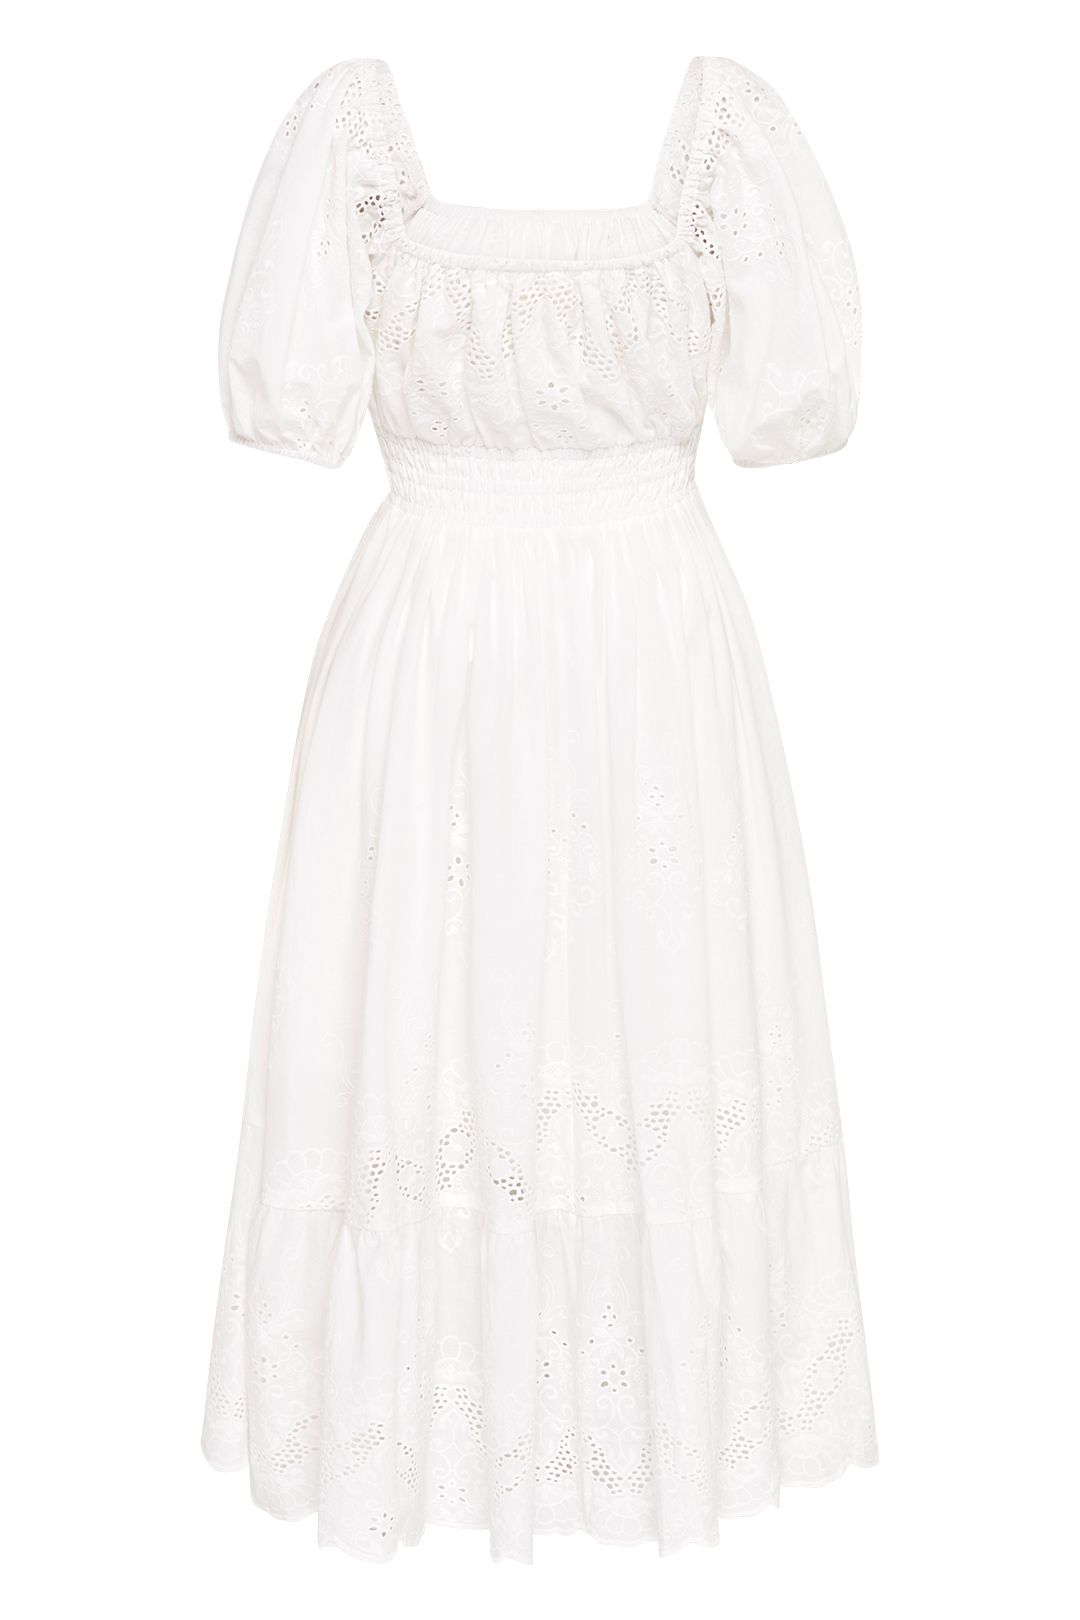 Capulet Soiree Dress in White | Spell | GlamCorner